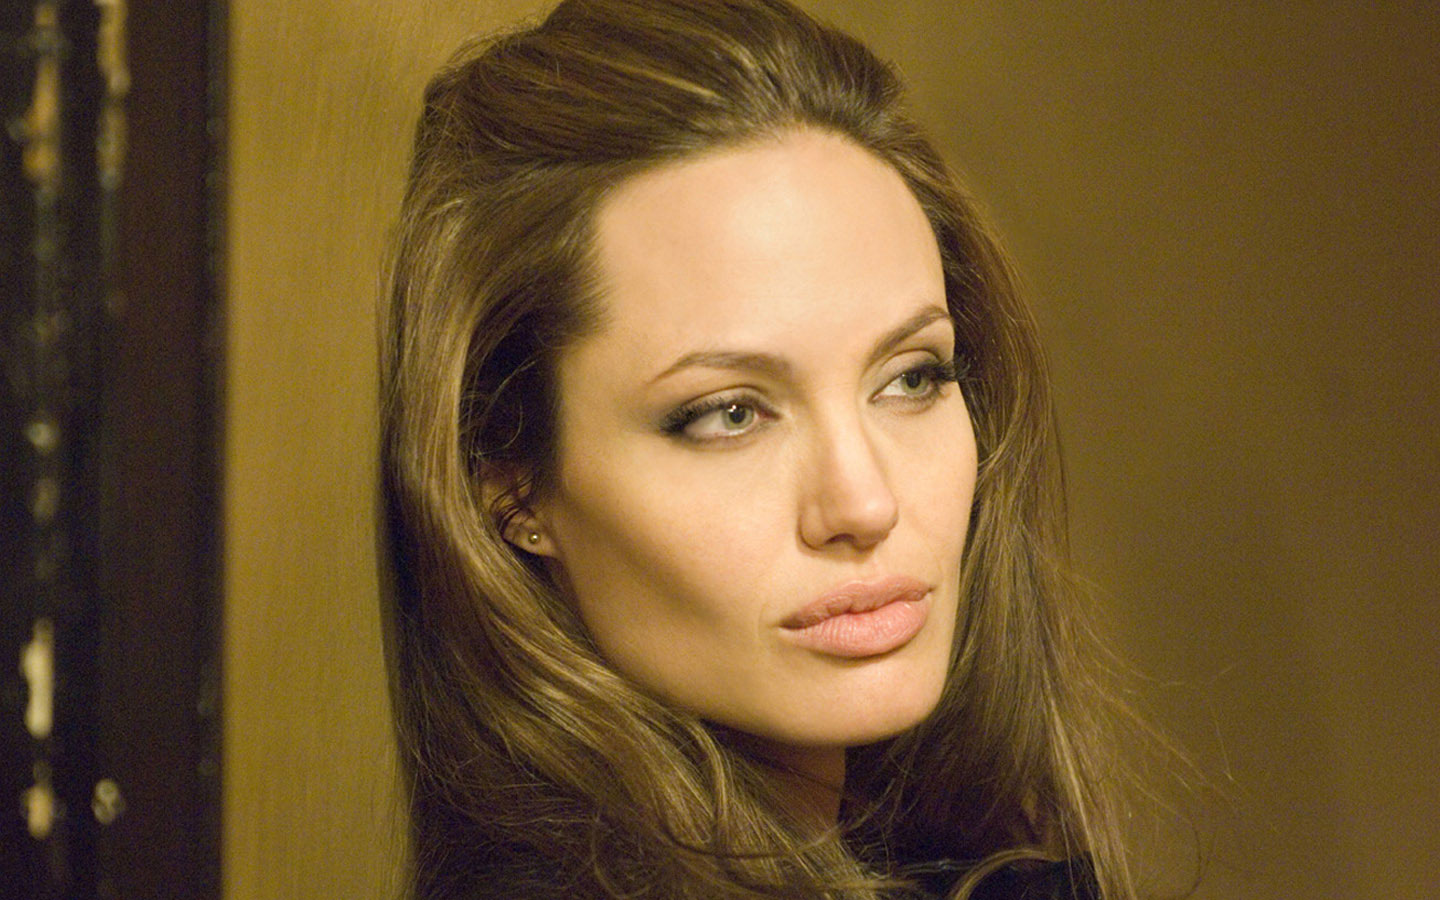 http://2.bp.blogspot.com/-cJ1bw-tSgXg/UOYLhGFspJI/AAAAAAAABNk/VwSYI3WsJ04/s1600/Angelina-Jolie-Wanted-angelina-jolie-31763127-1440-900.jpg